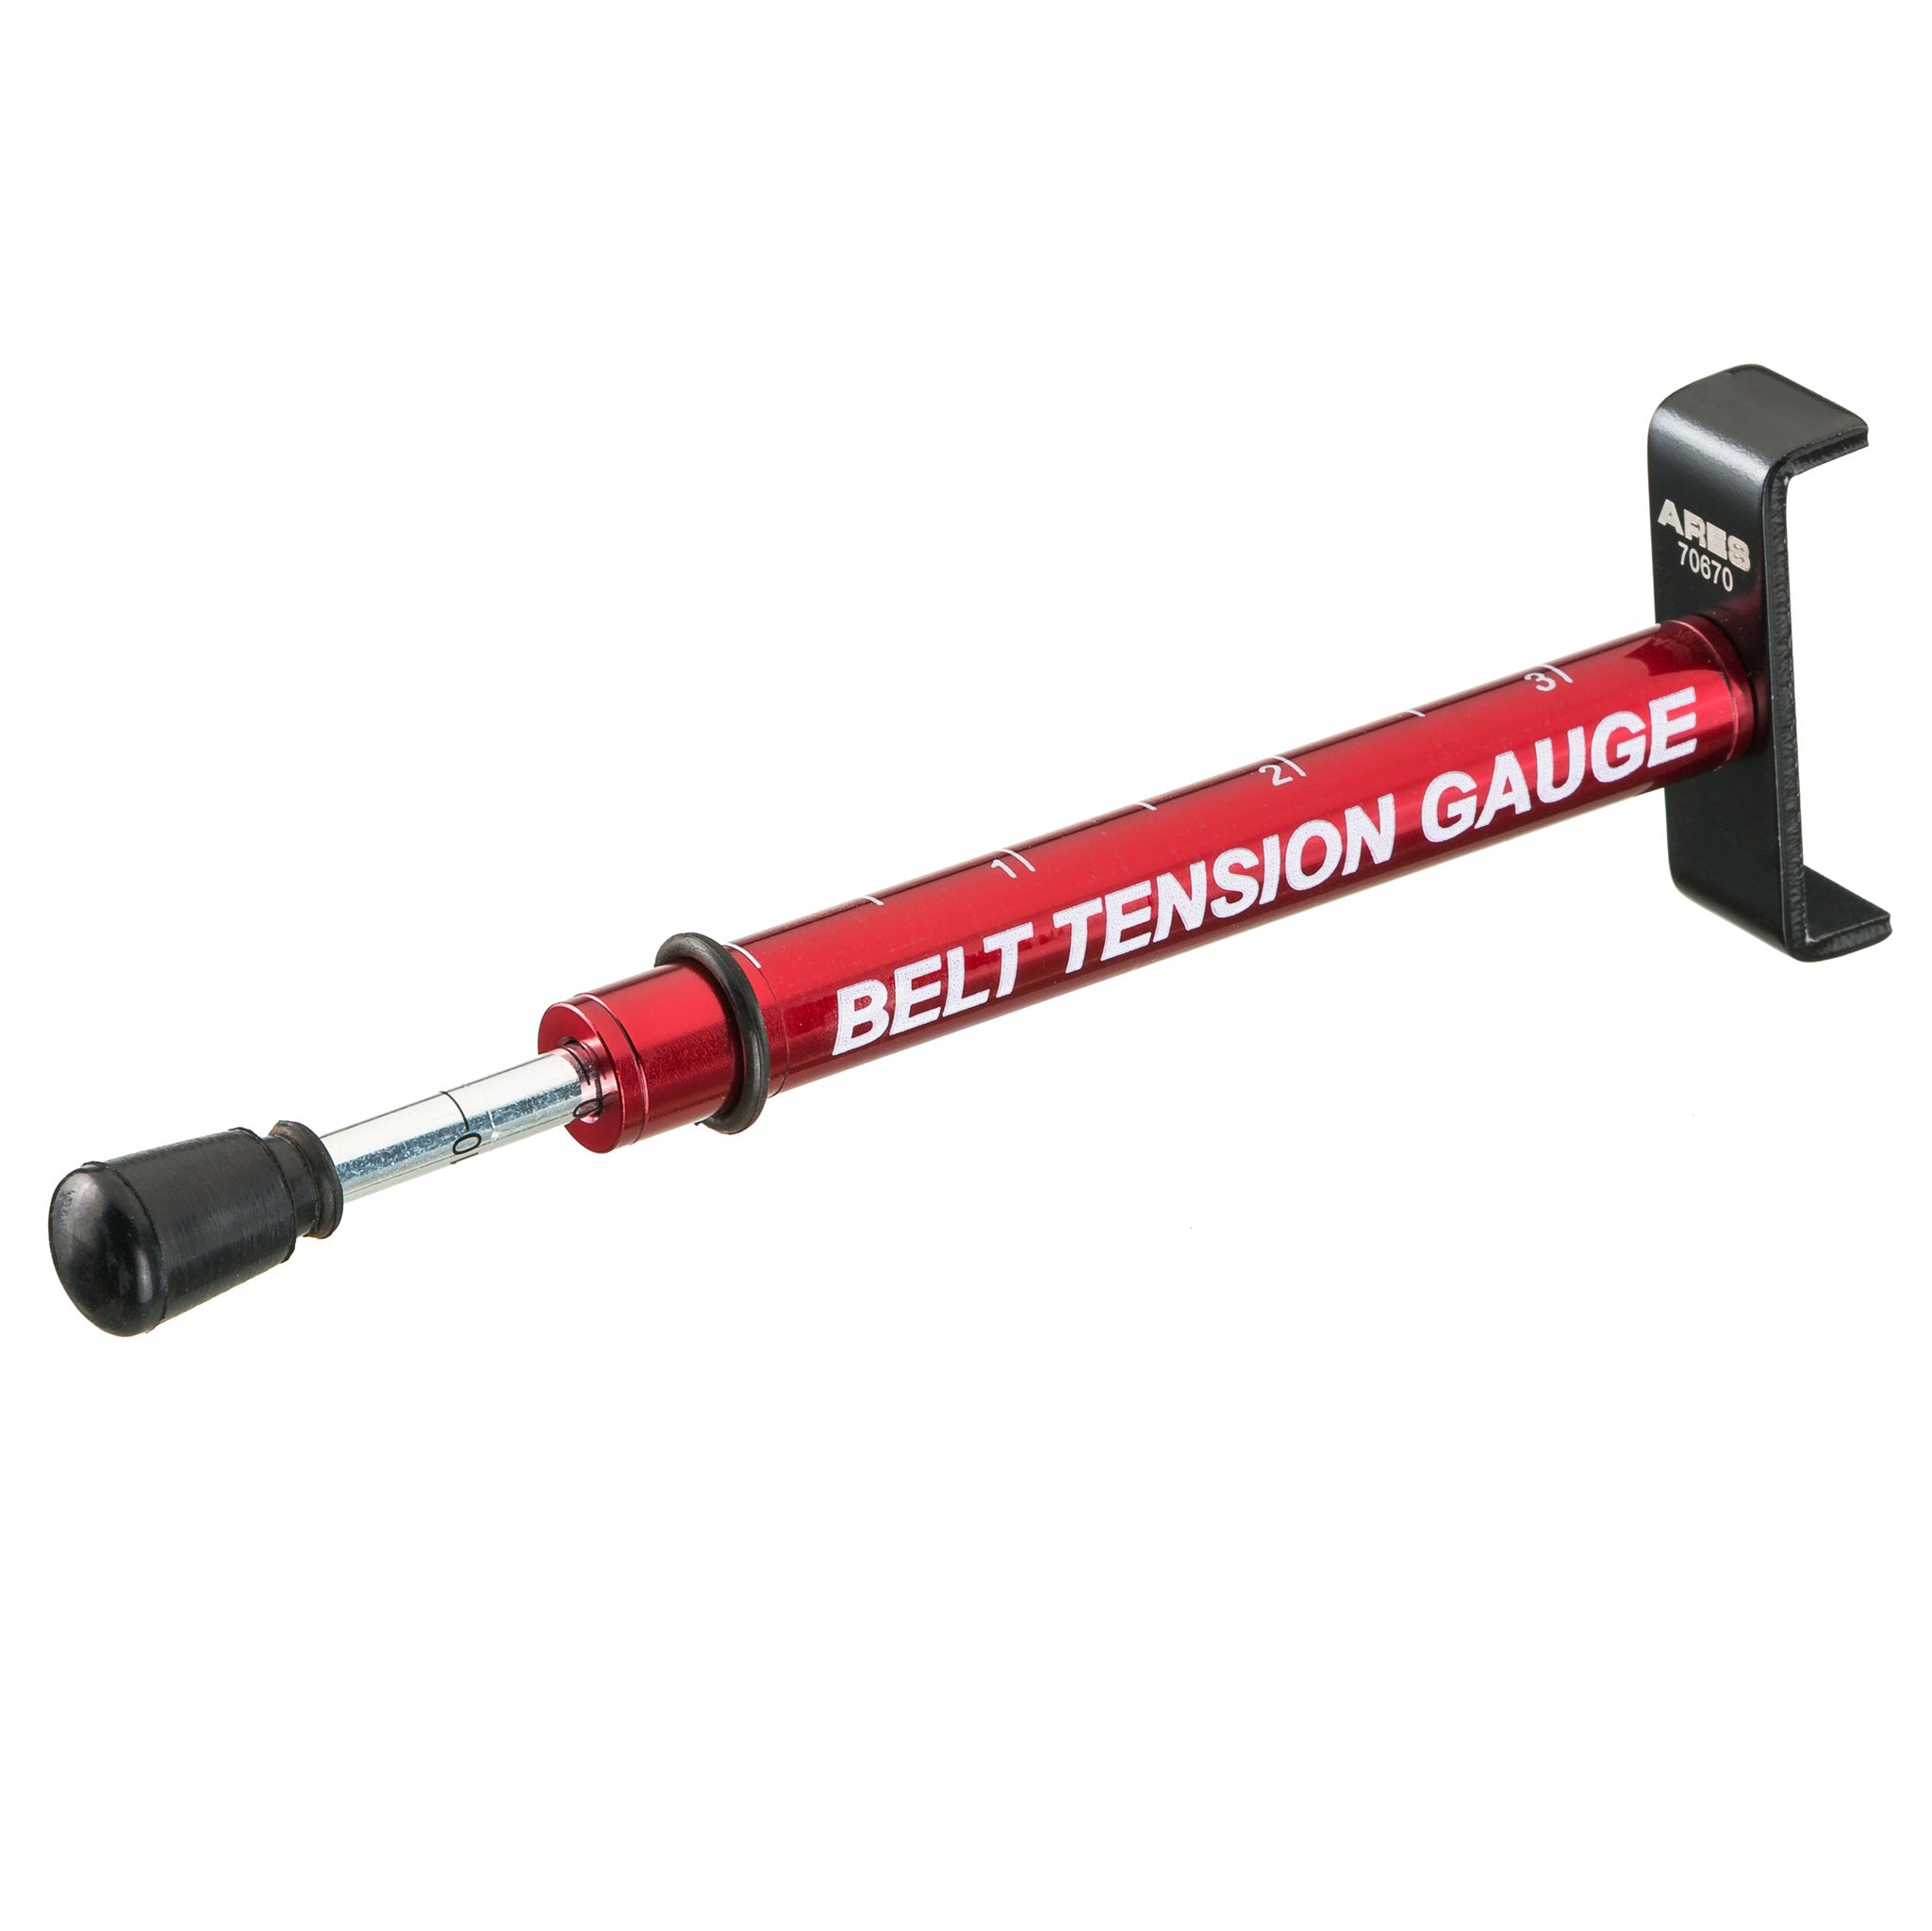 Belt Tension Gauge – ARES Tool, MJD Industries, LLC